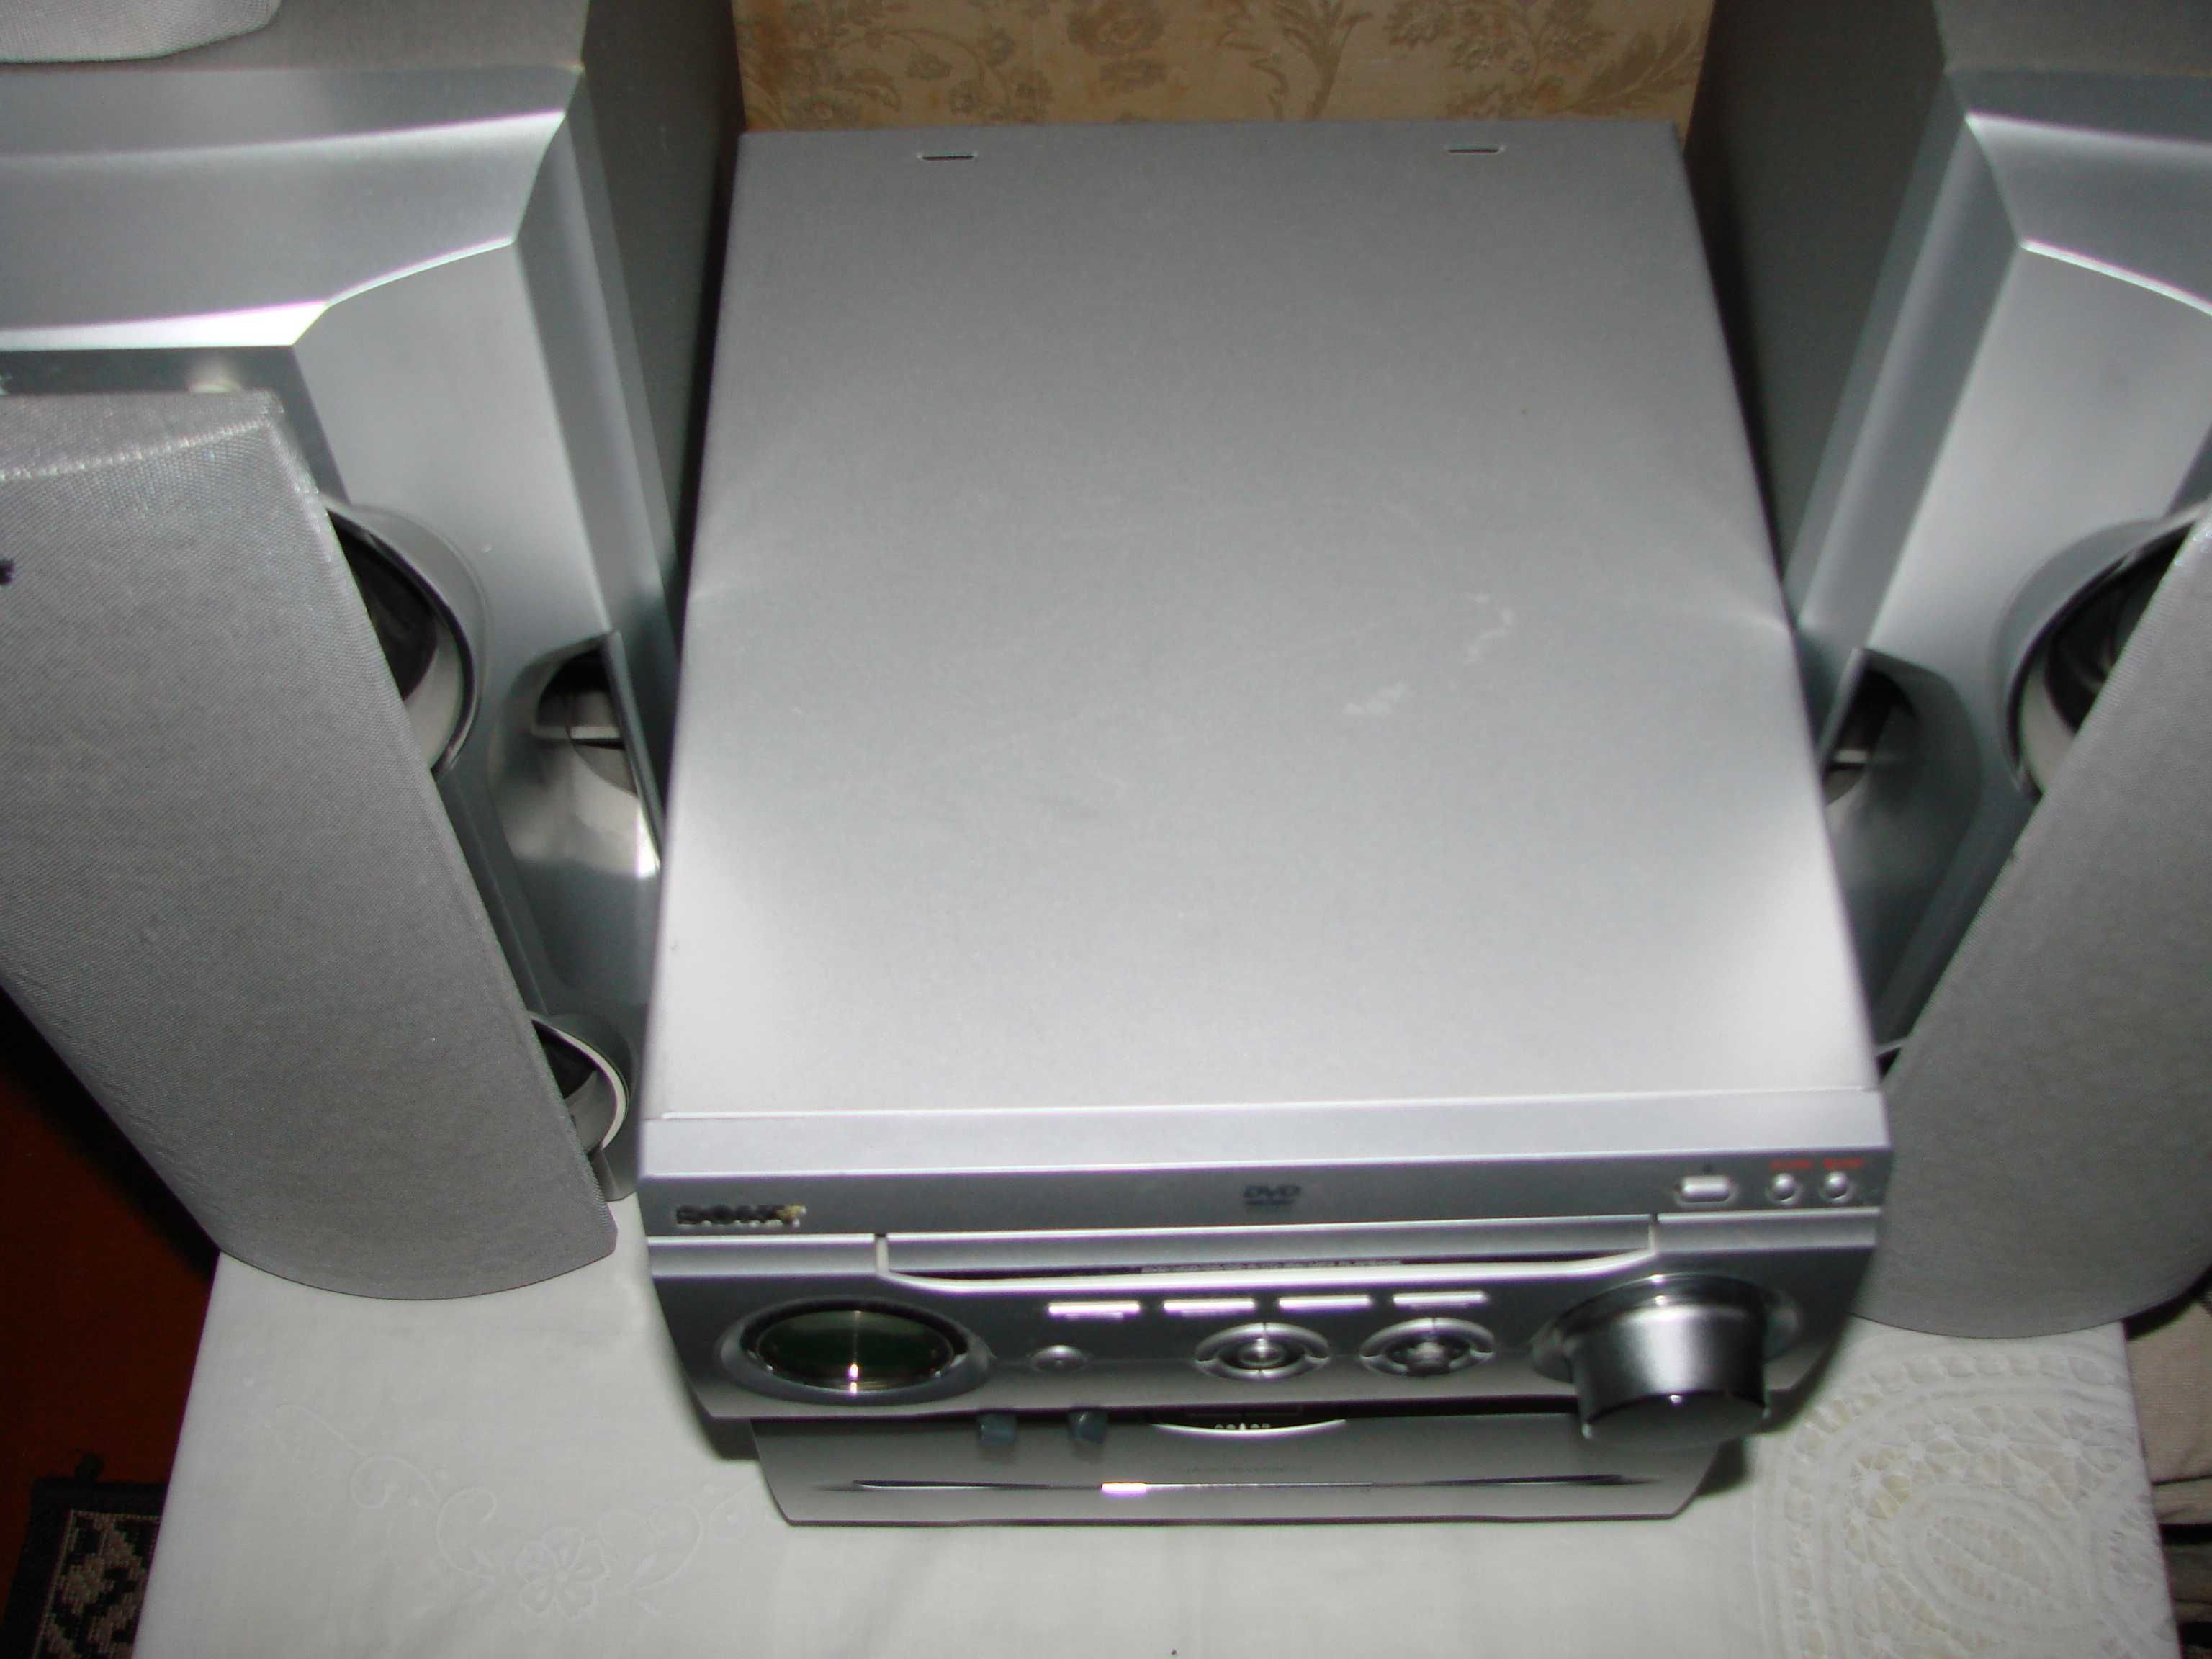 Музыкальный центр Sony MHC-WZ80D, Hi-Fi система, AUX